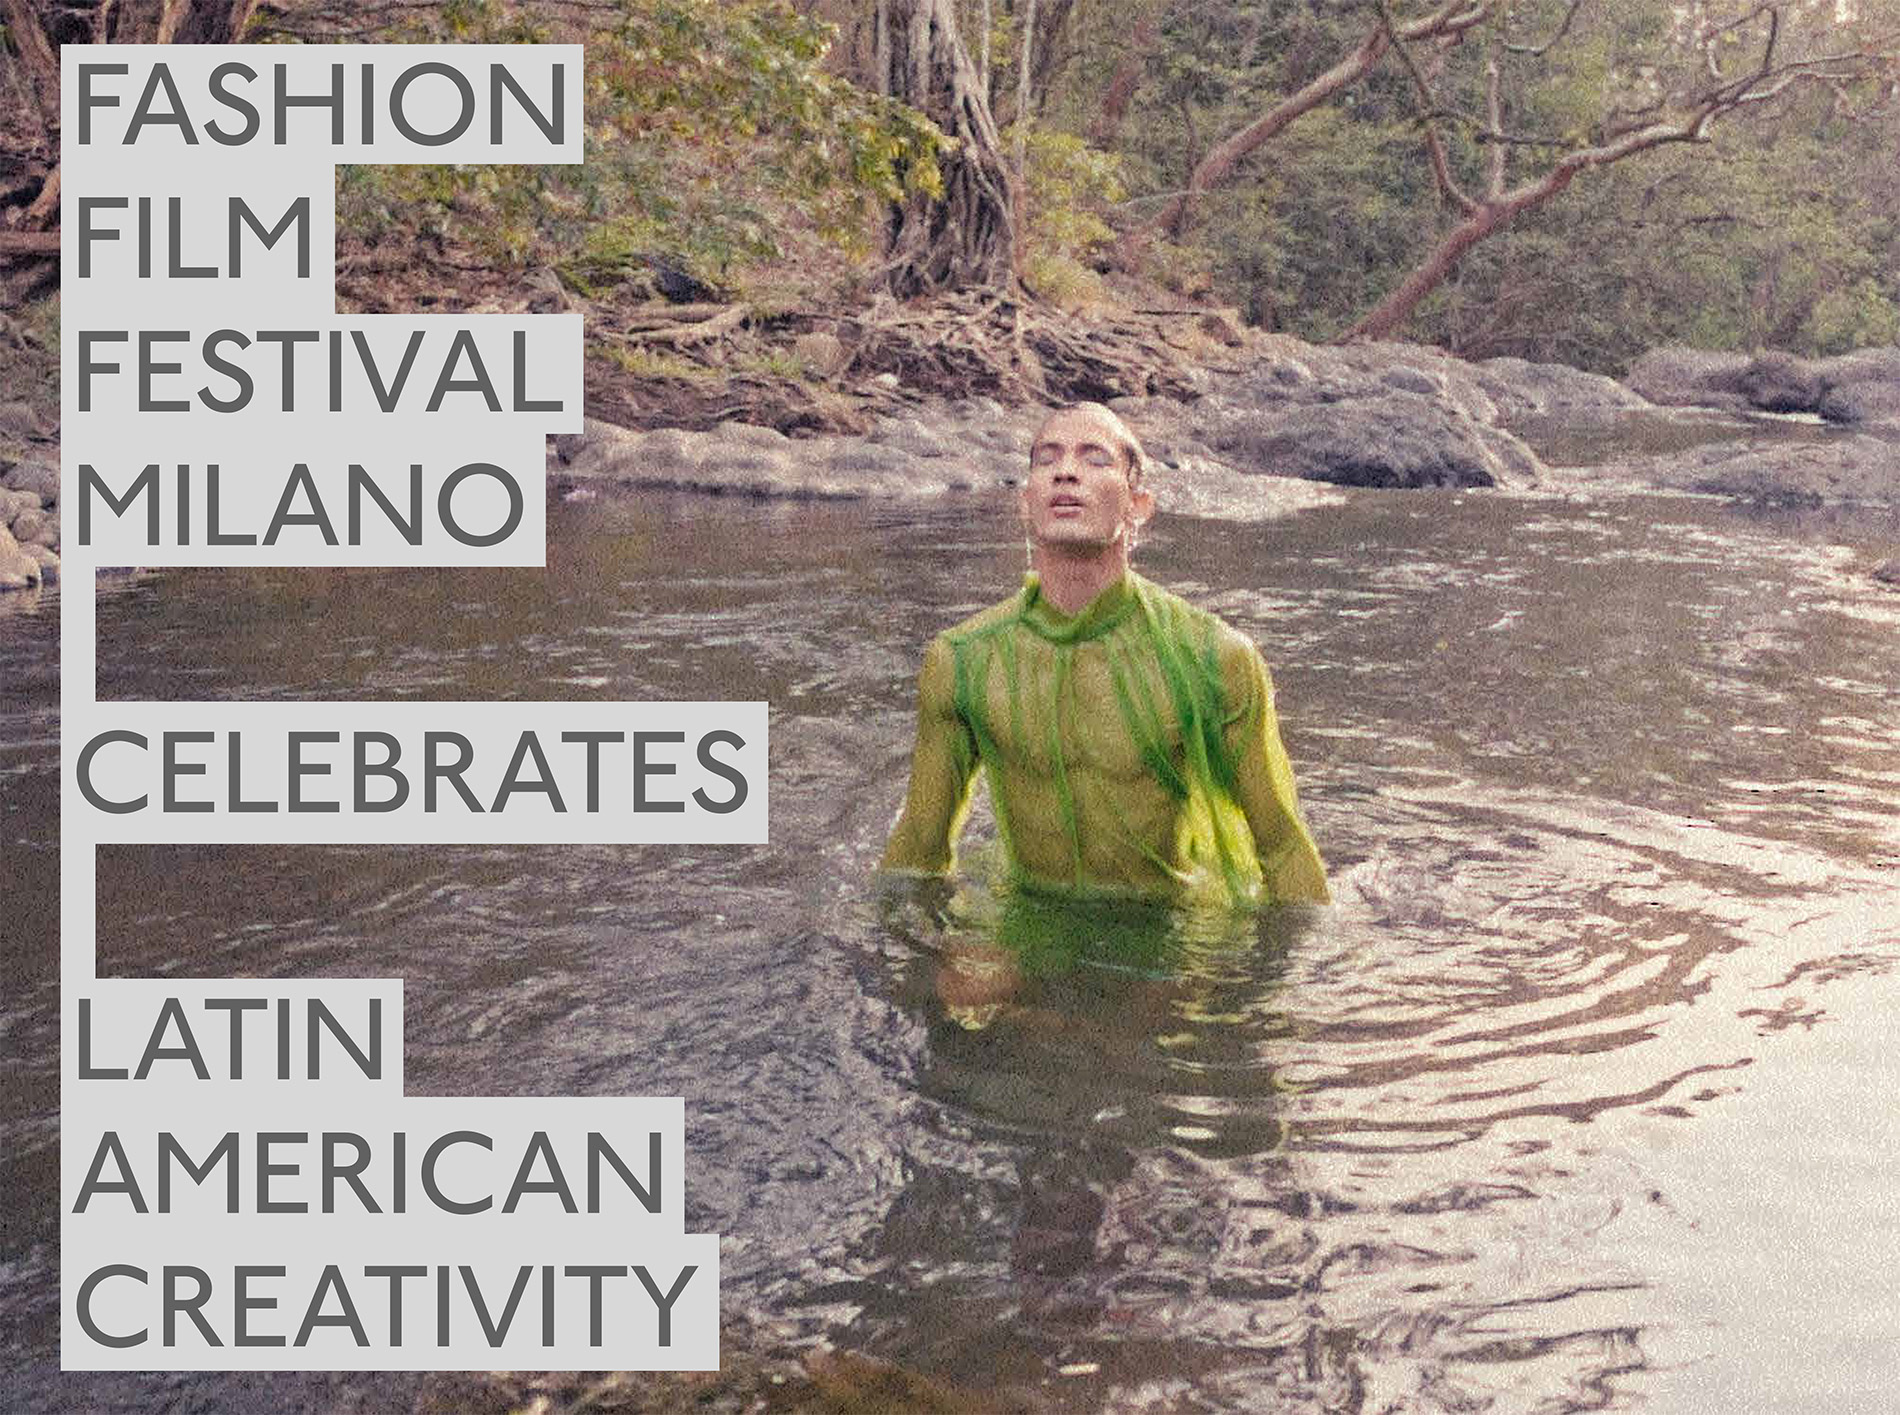 Hombre vestido con una túnica de red nadando en un lago con las palabras "Fashion Film Festival Milano celebrates Latin American creativity"